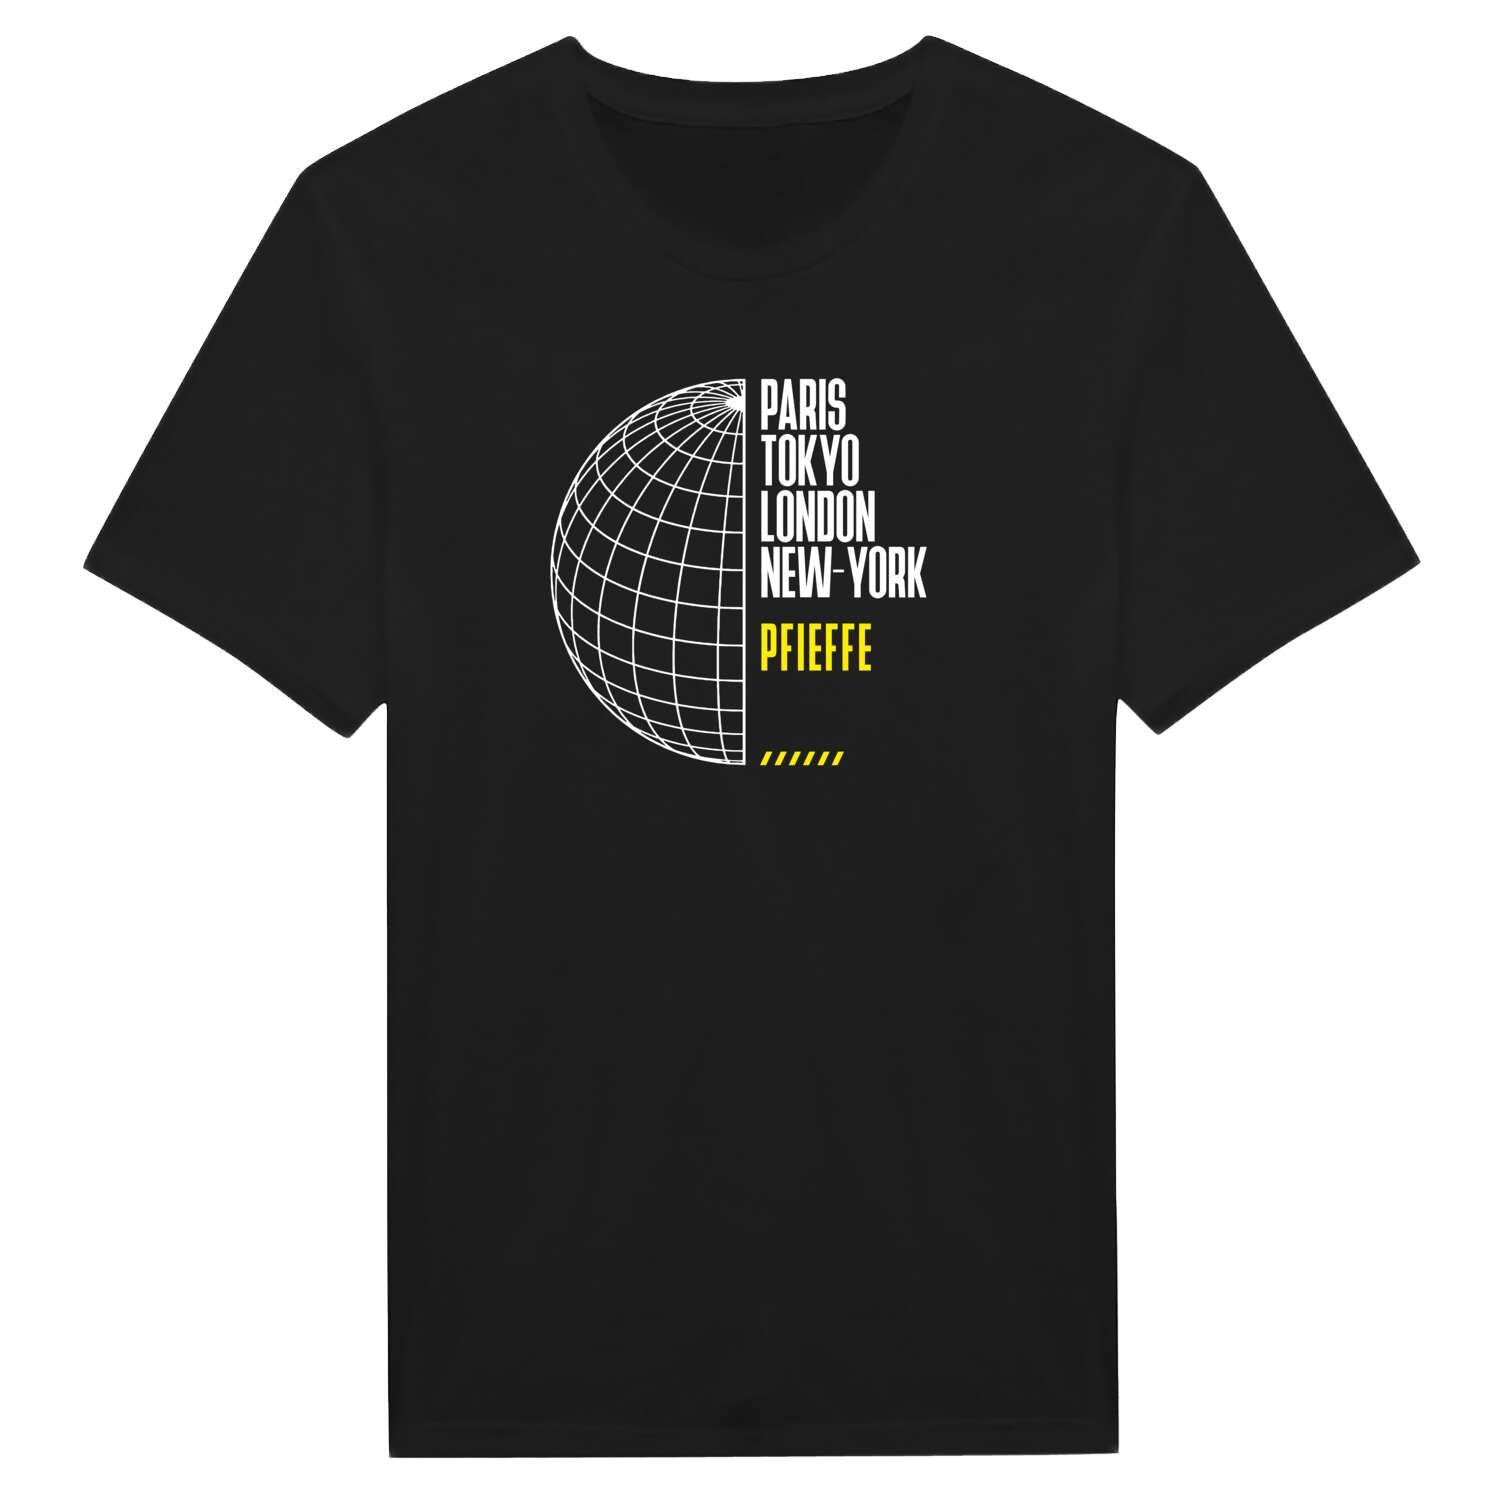 Pfieffe T-Shirt »Paris Tokyo London«